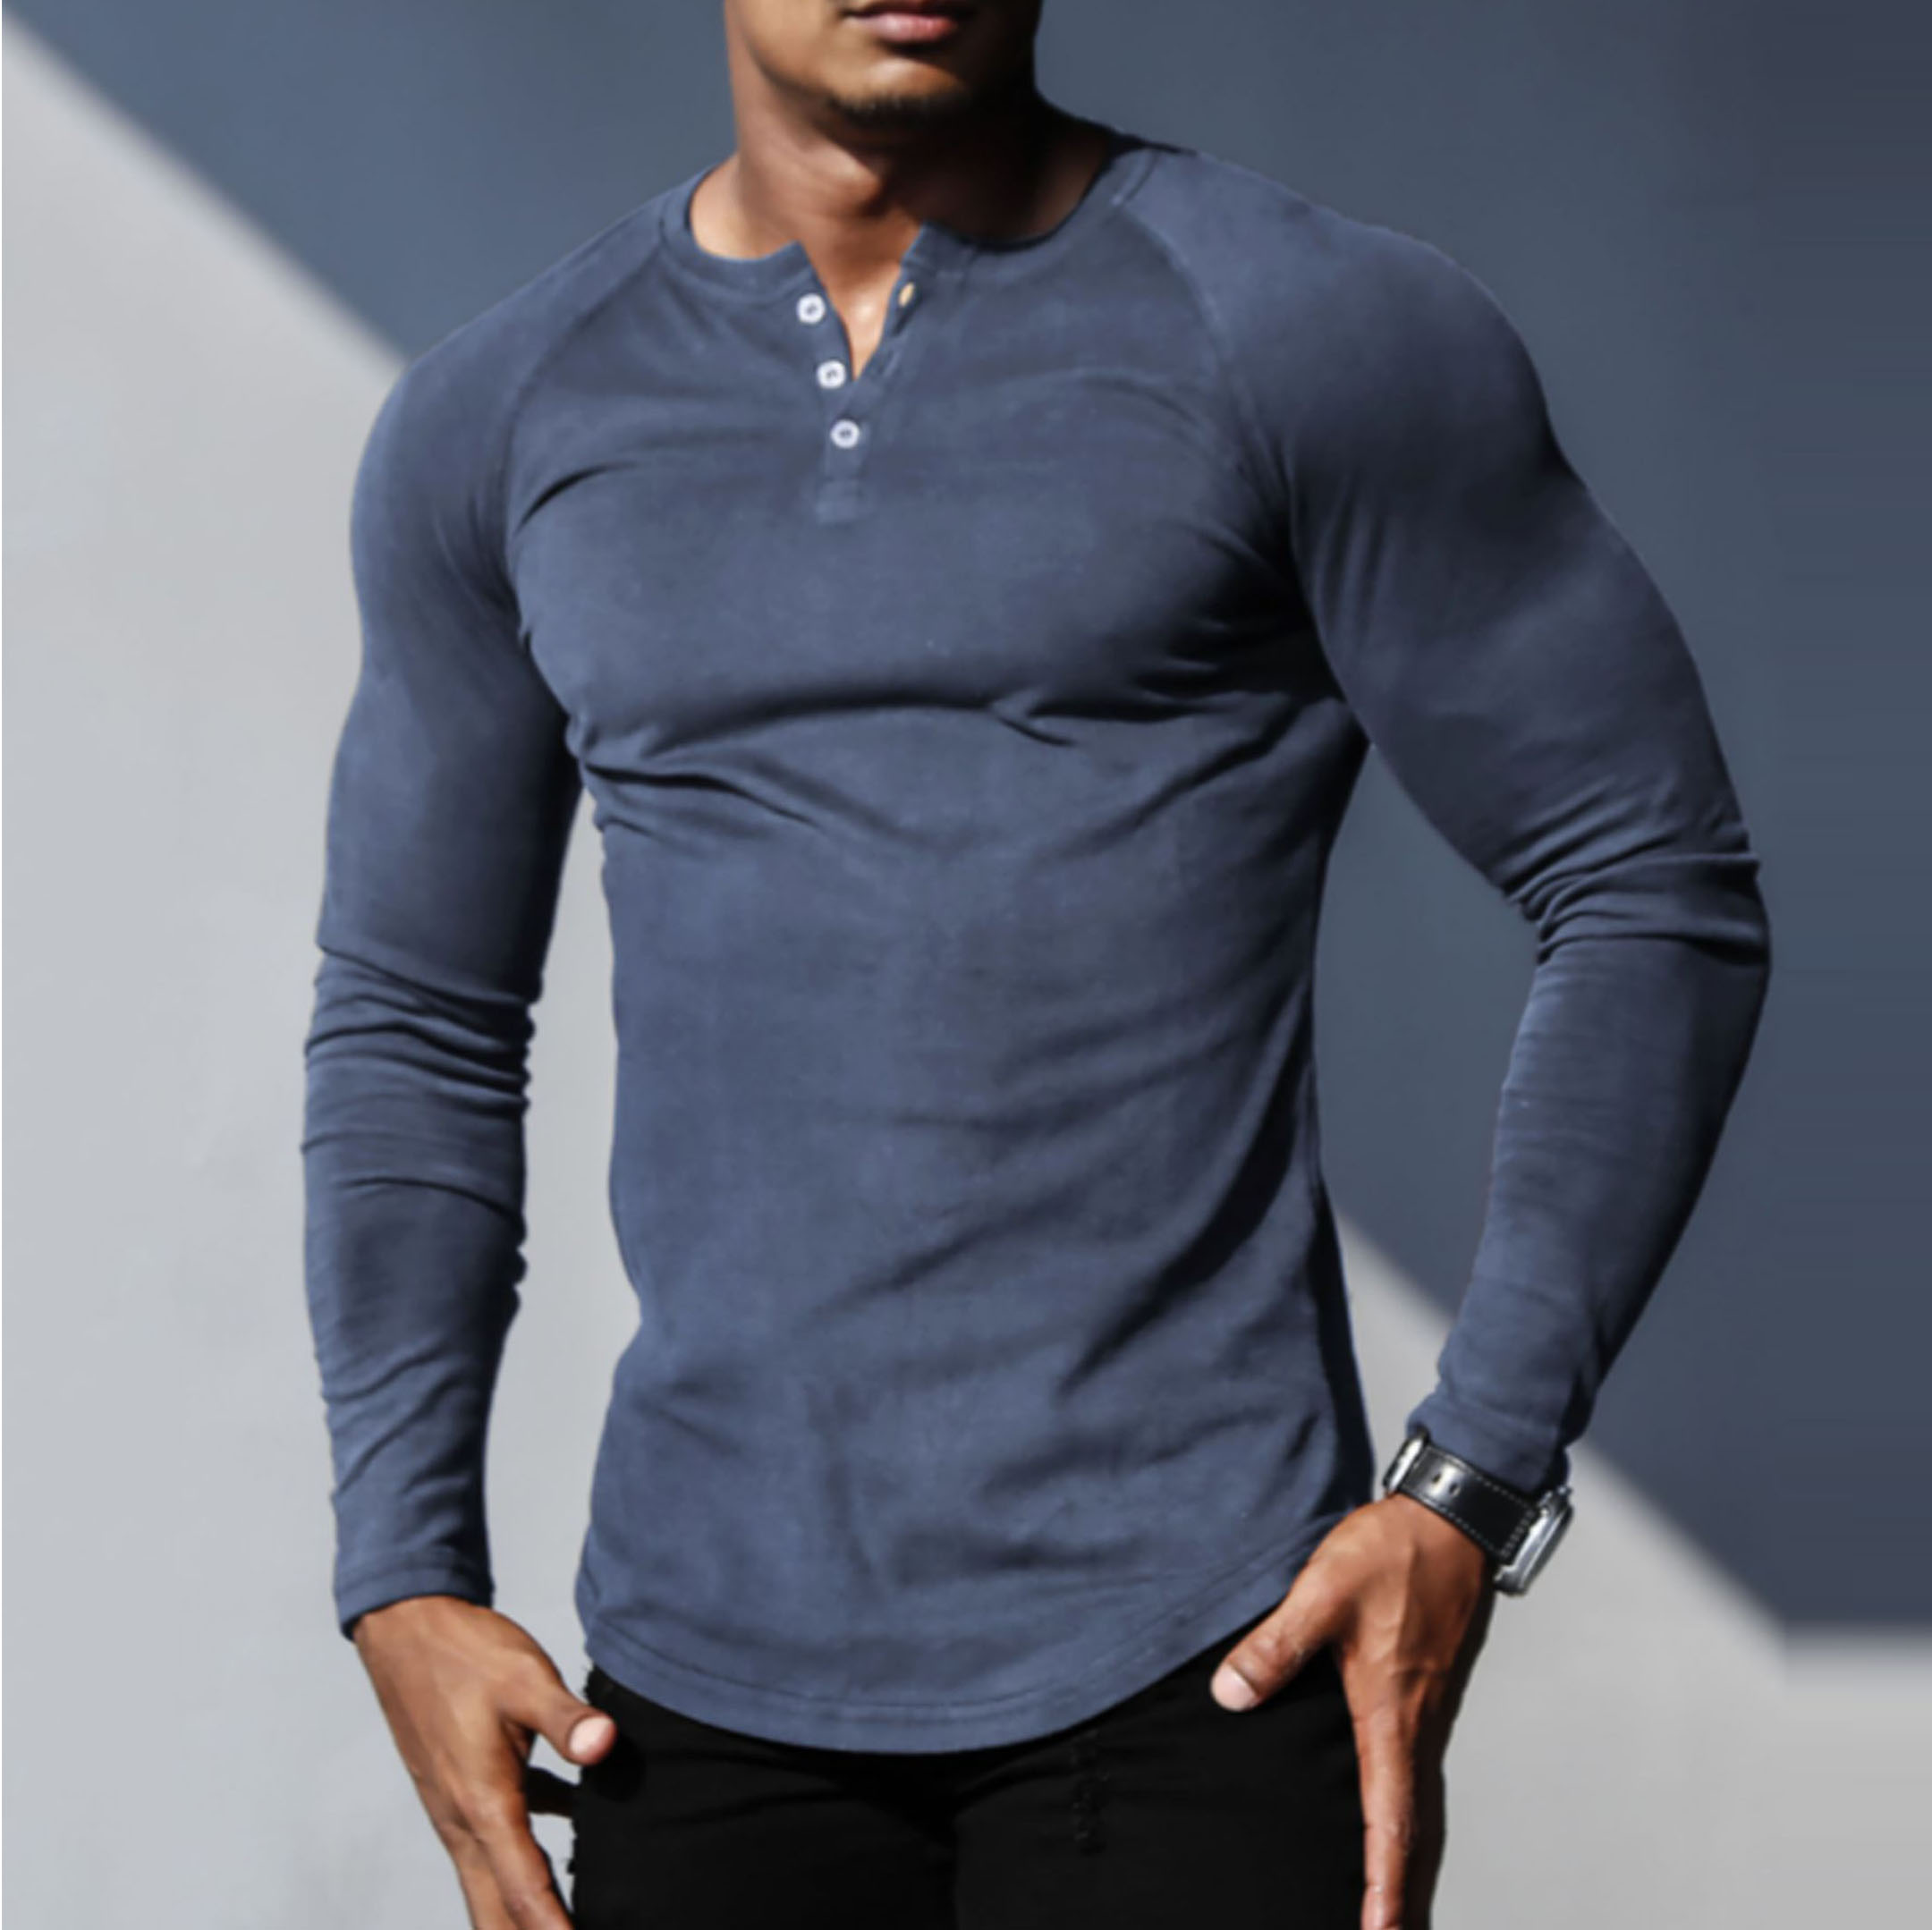 Men's V-neck Slim Basic Chic Long Sleeve T-shirt